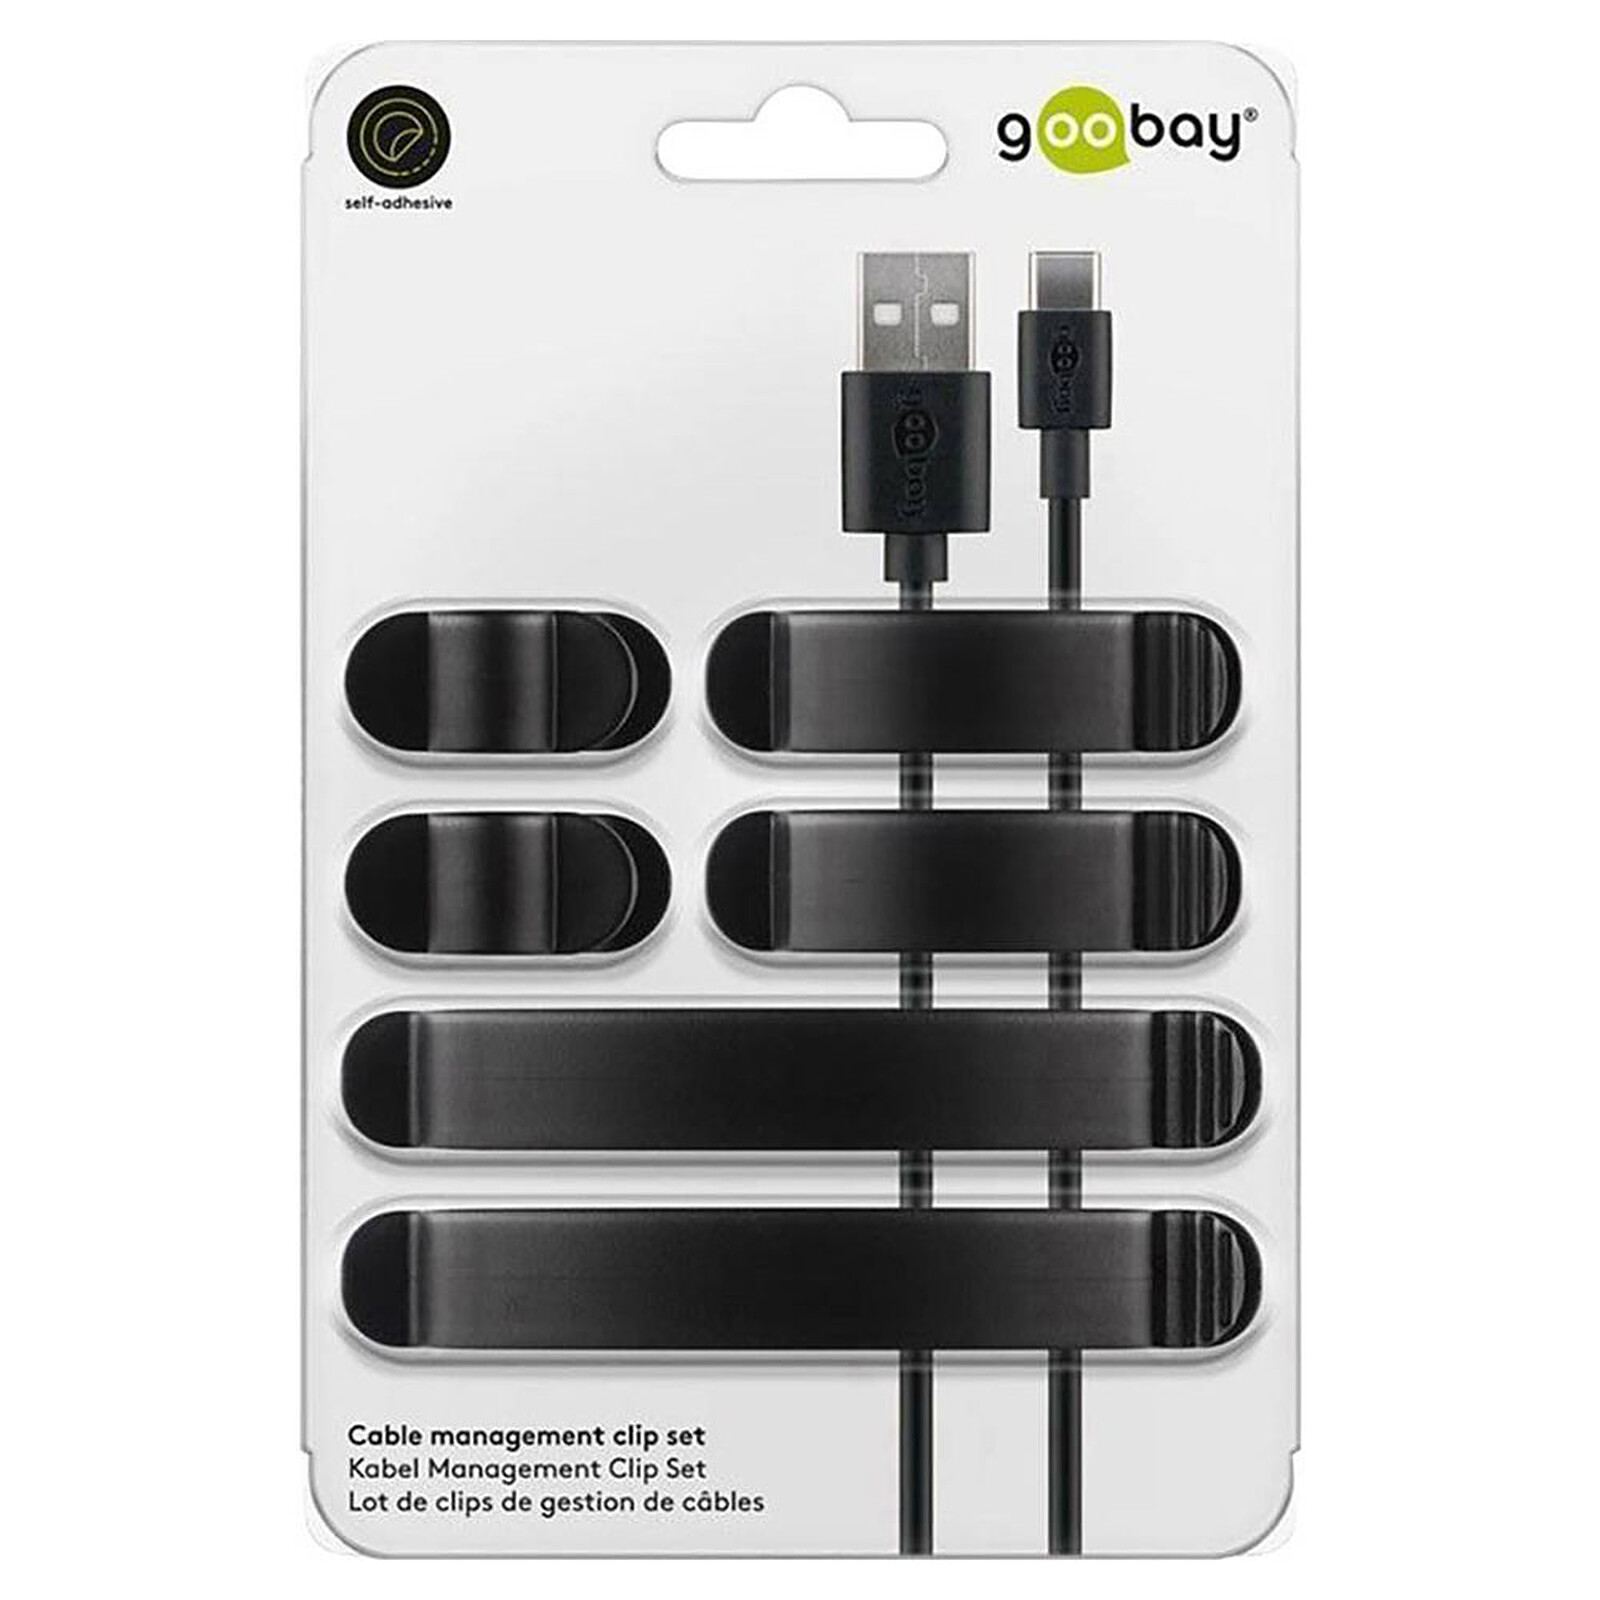 Goobay 5 Slot Cable Management - Blanc - Serre câble - Garantie 3 ans LDLC